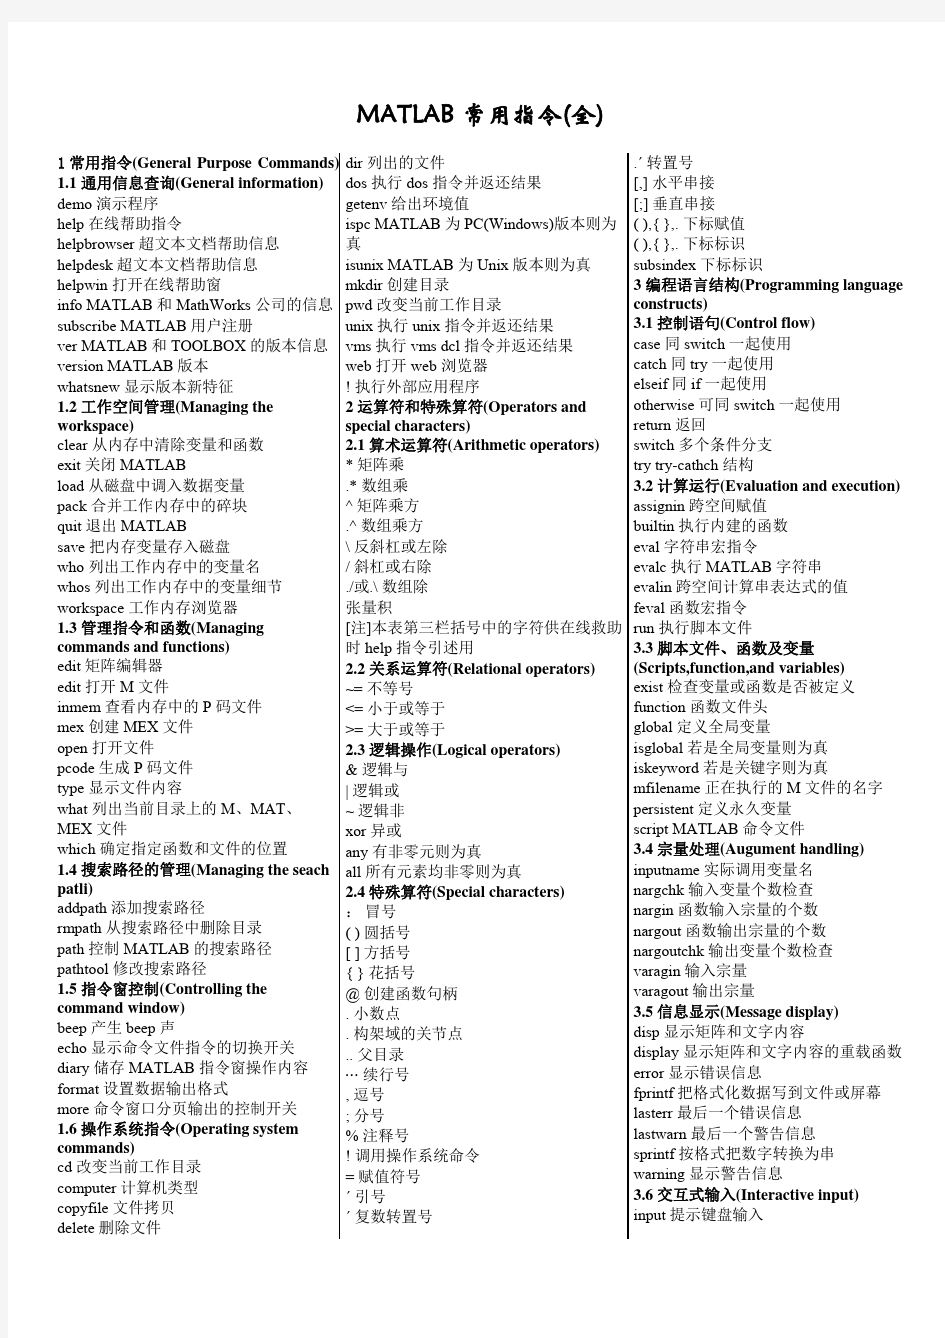 MATLAB常用指令(全)(print)